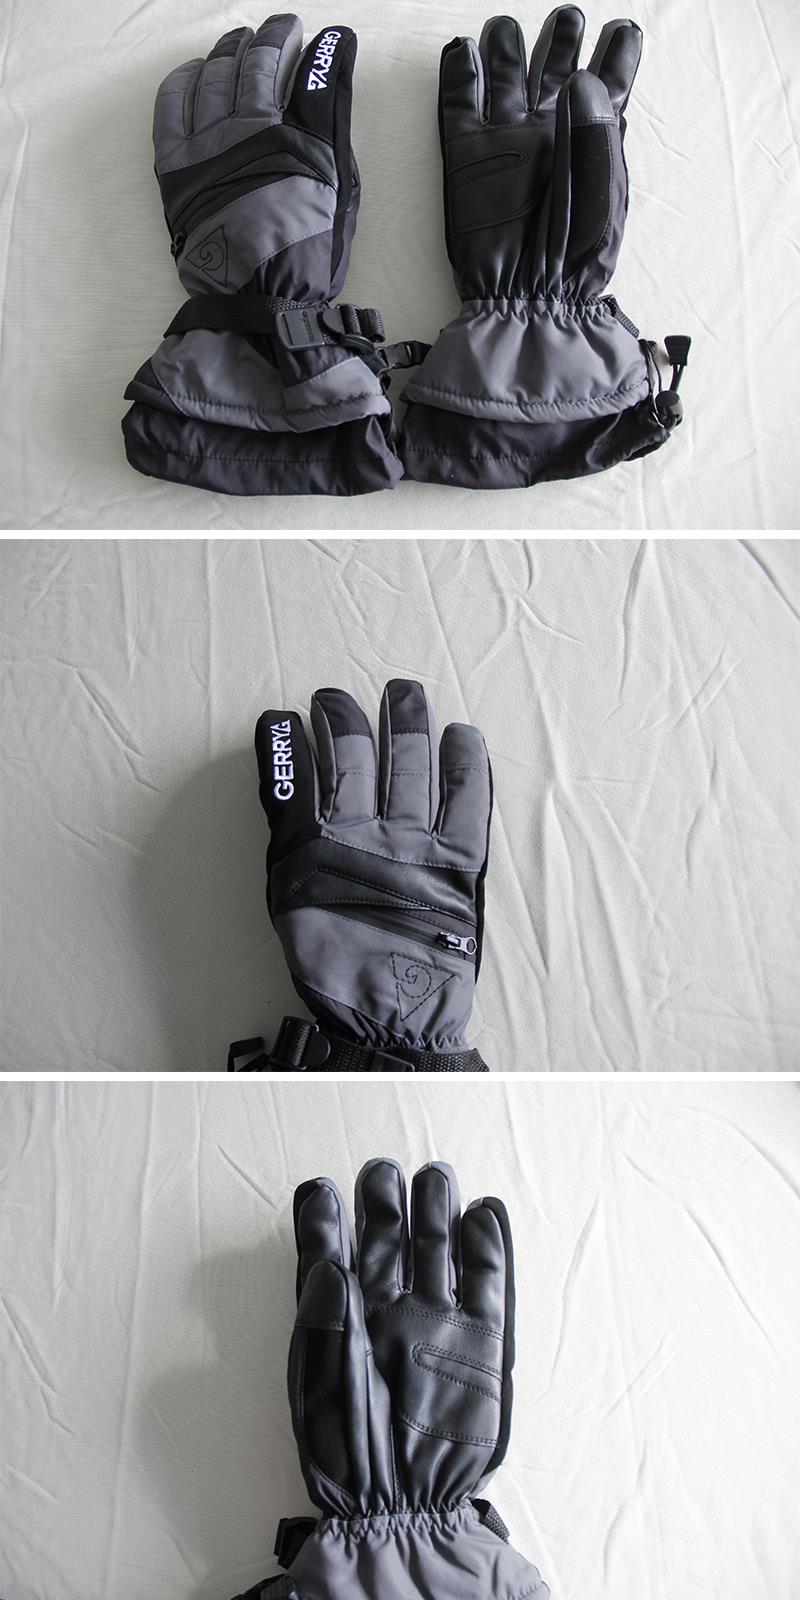 Men's Ski Gloves.jpg